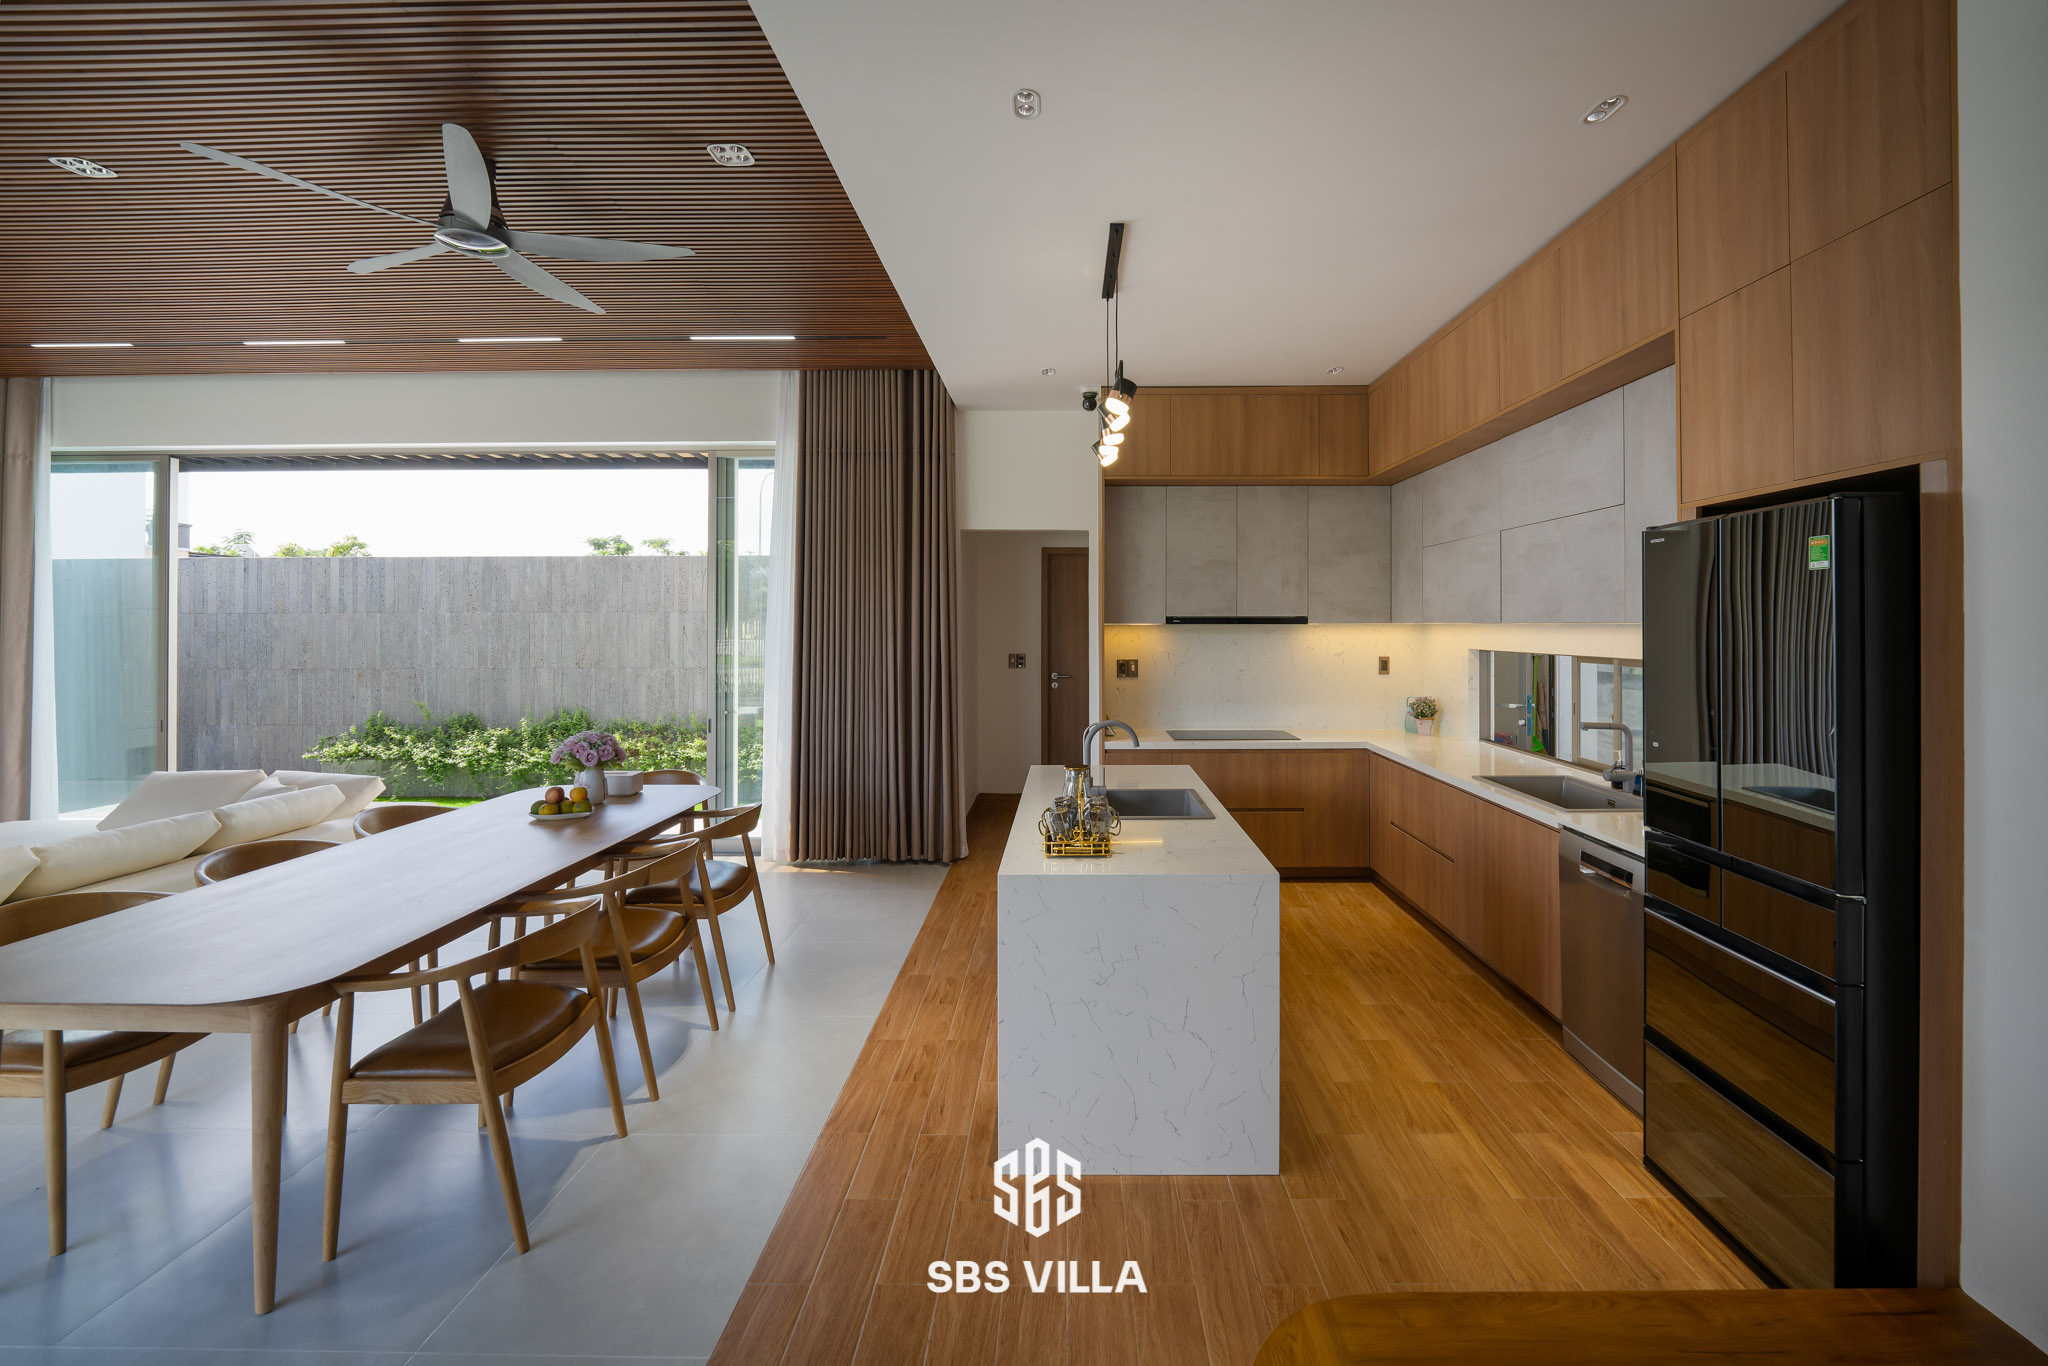 Phòng bếp hiện đại kết hợp tối giản sử dụng chất liệu gỗ tạo nên điểm nhấn sang trọng cho không gian 